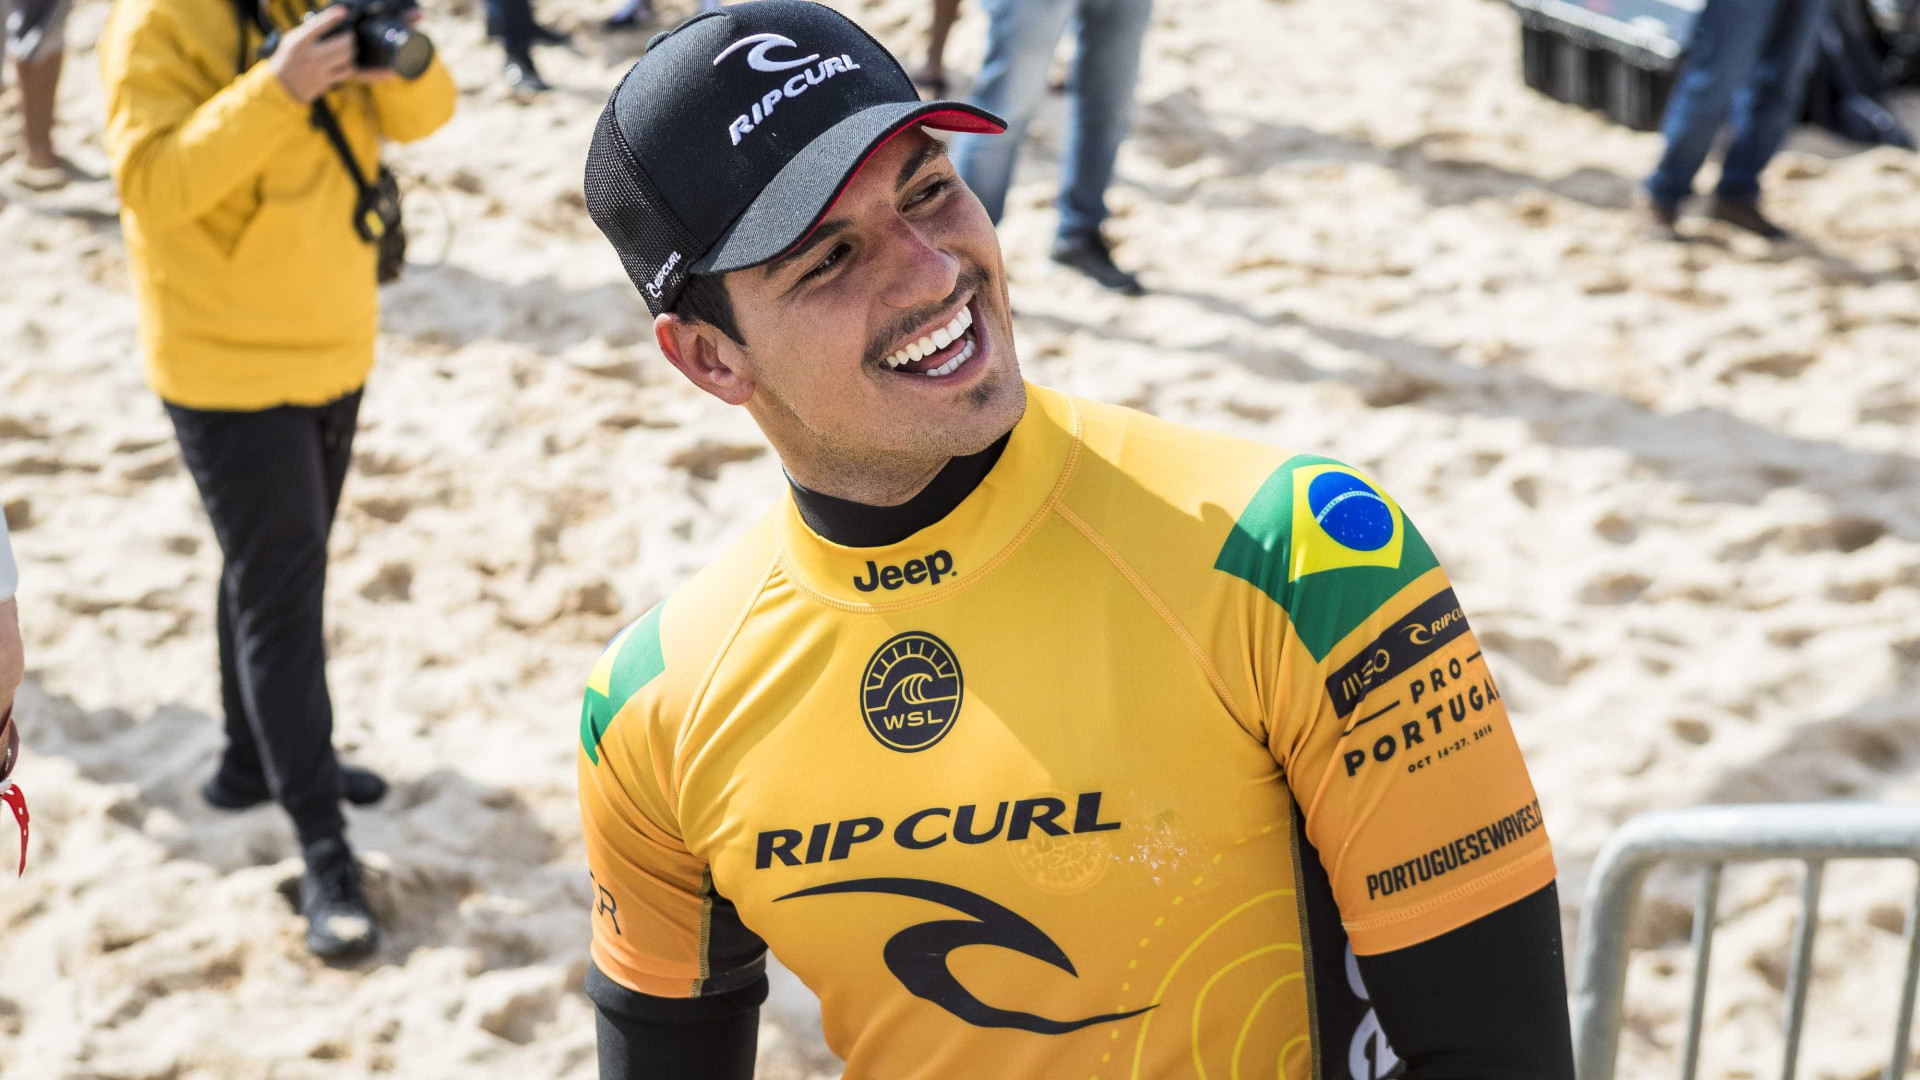 Medina pode ser tricampeão mundial de surfe na etapa de Portugal